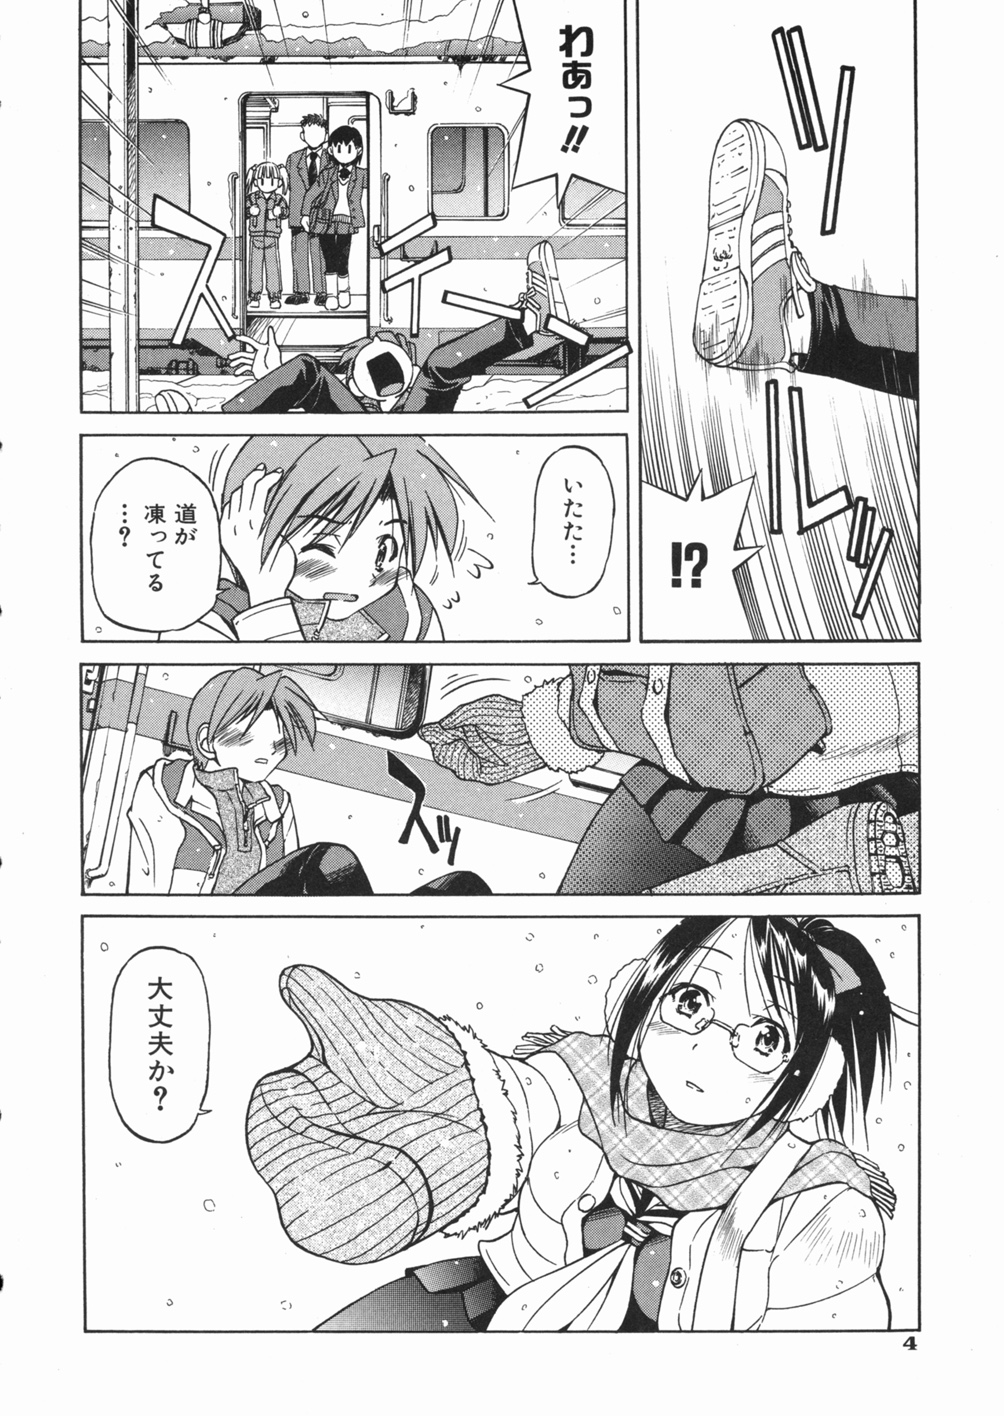 [Inoue Yoshihisa] Sunao page 8 full